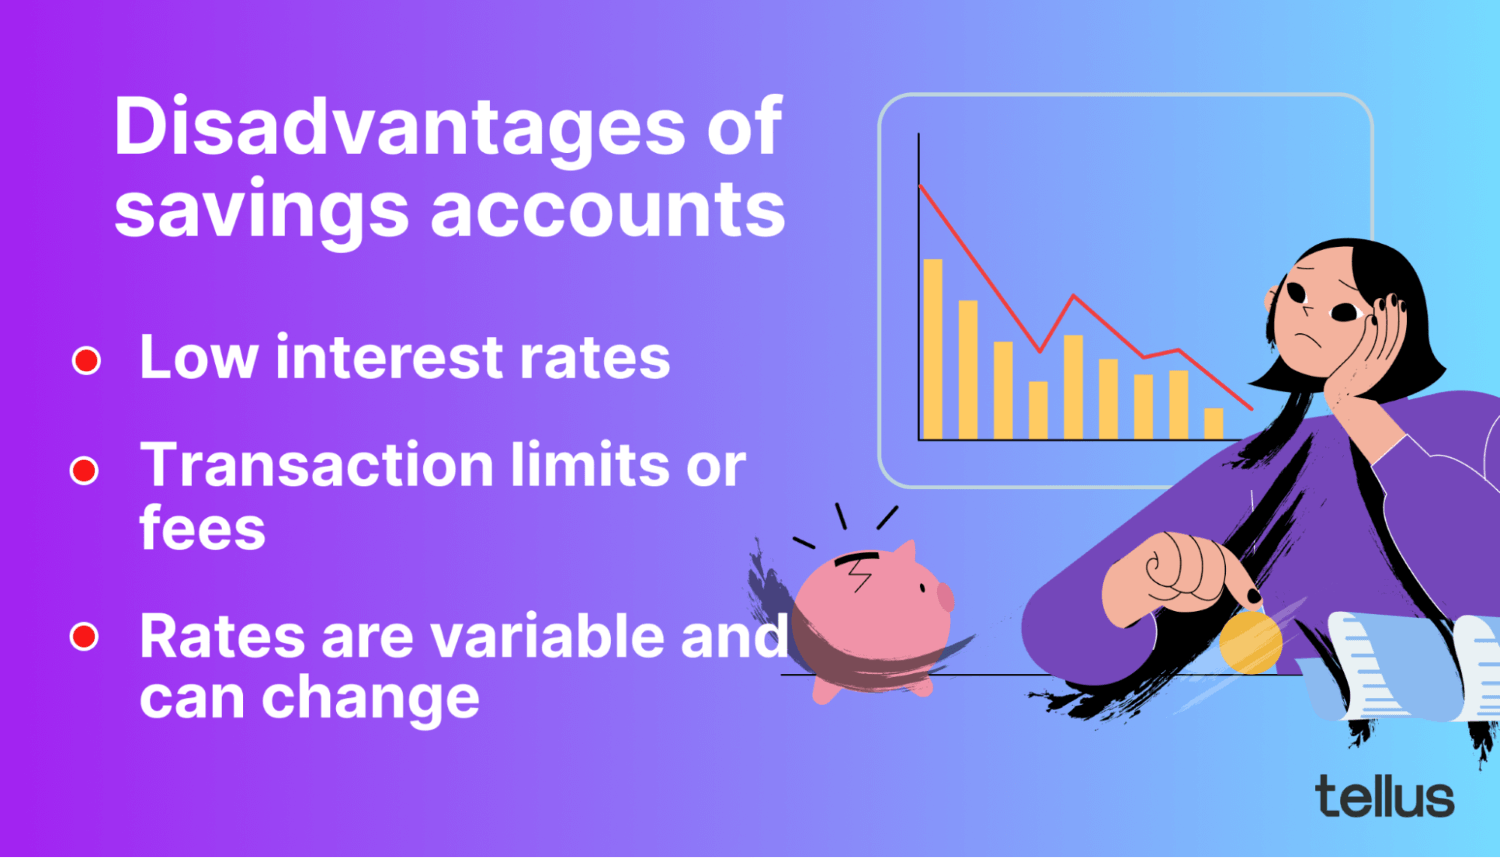 An infographic listing common drawbacks of savings accounts